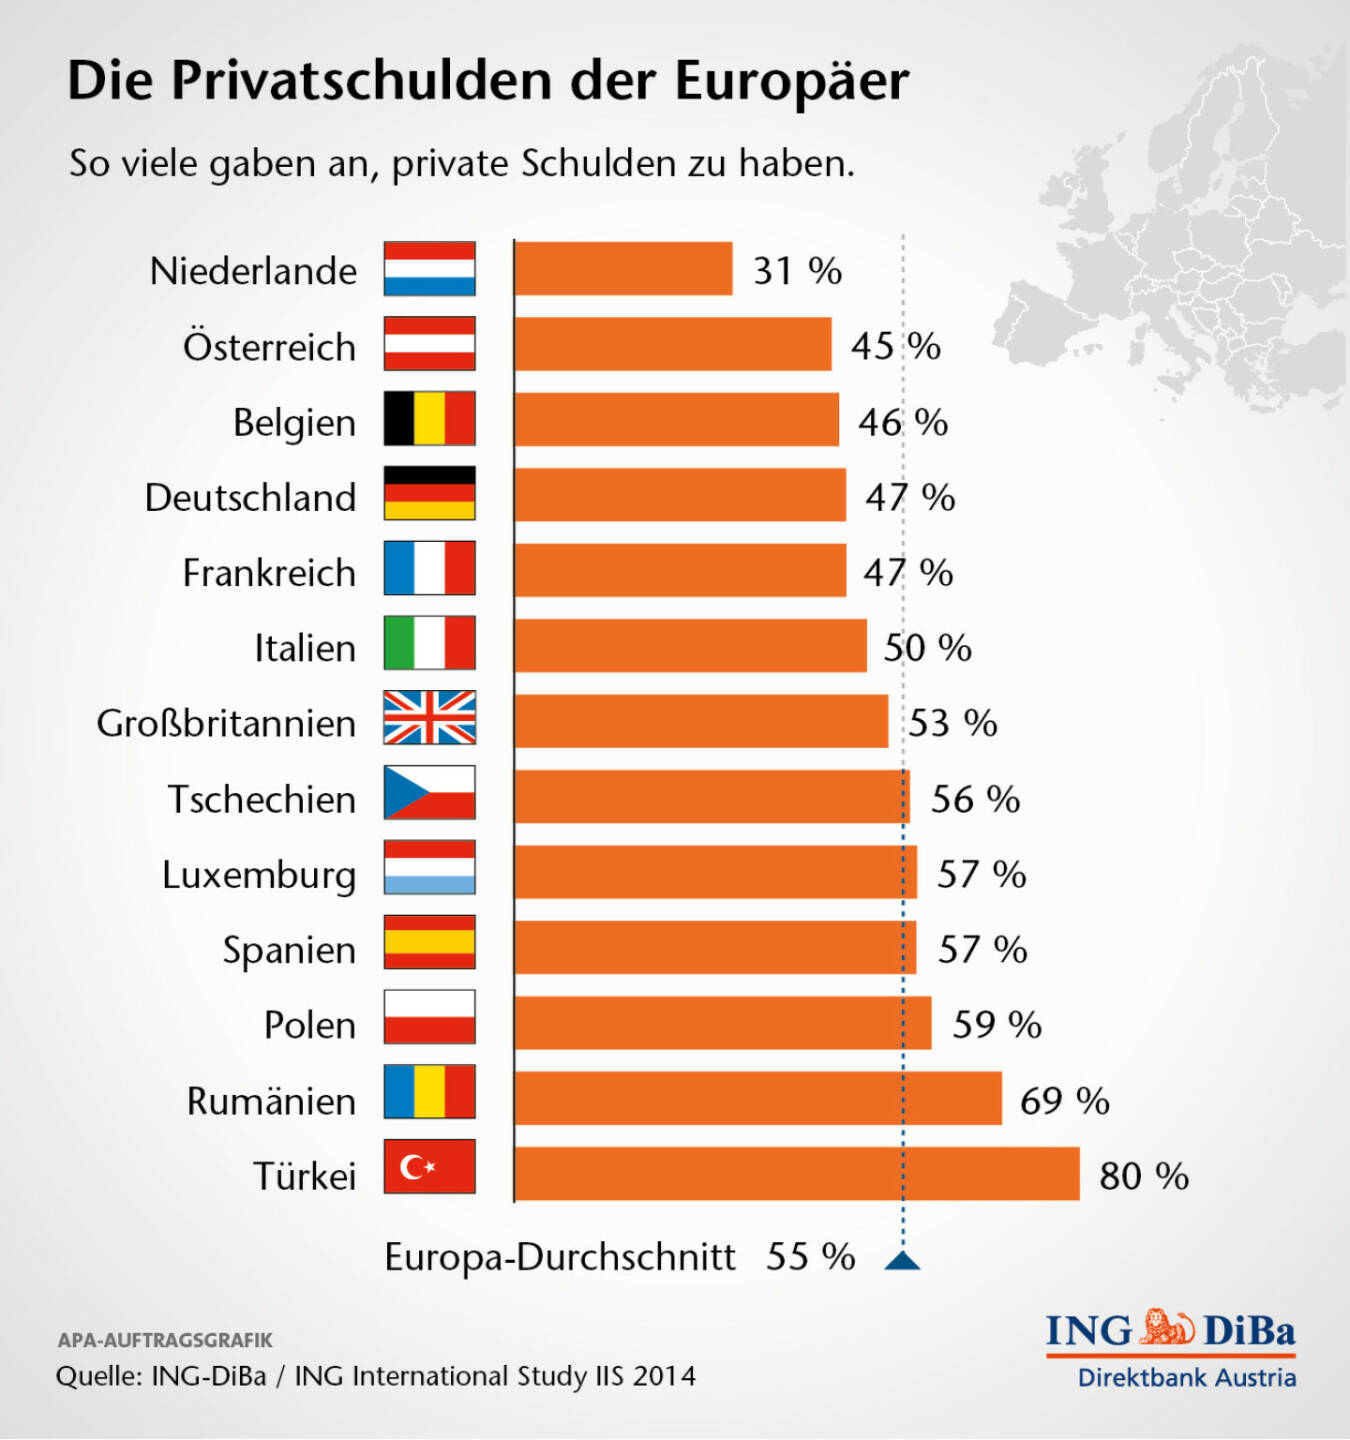 Die Privatschulden der Europäer, (C) ING-Diba